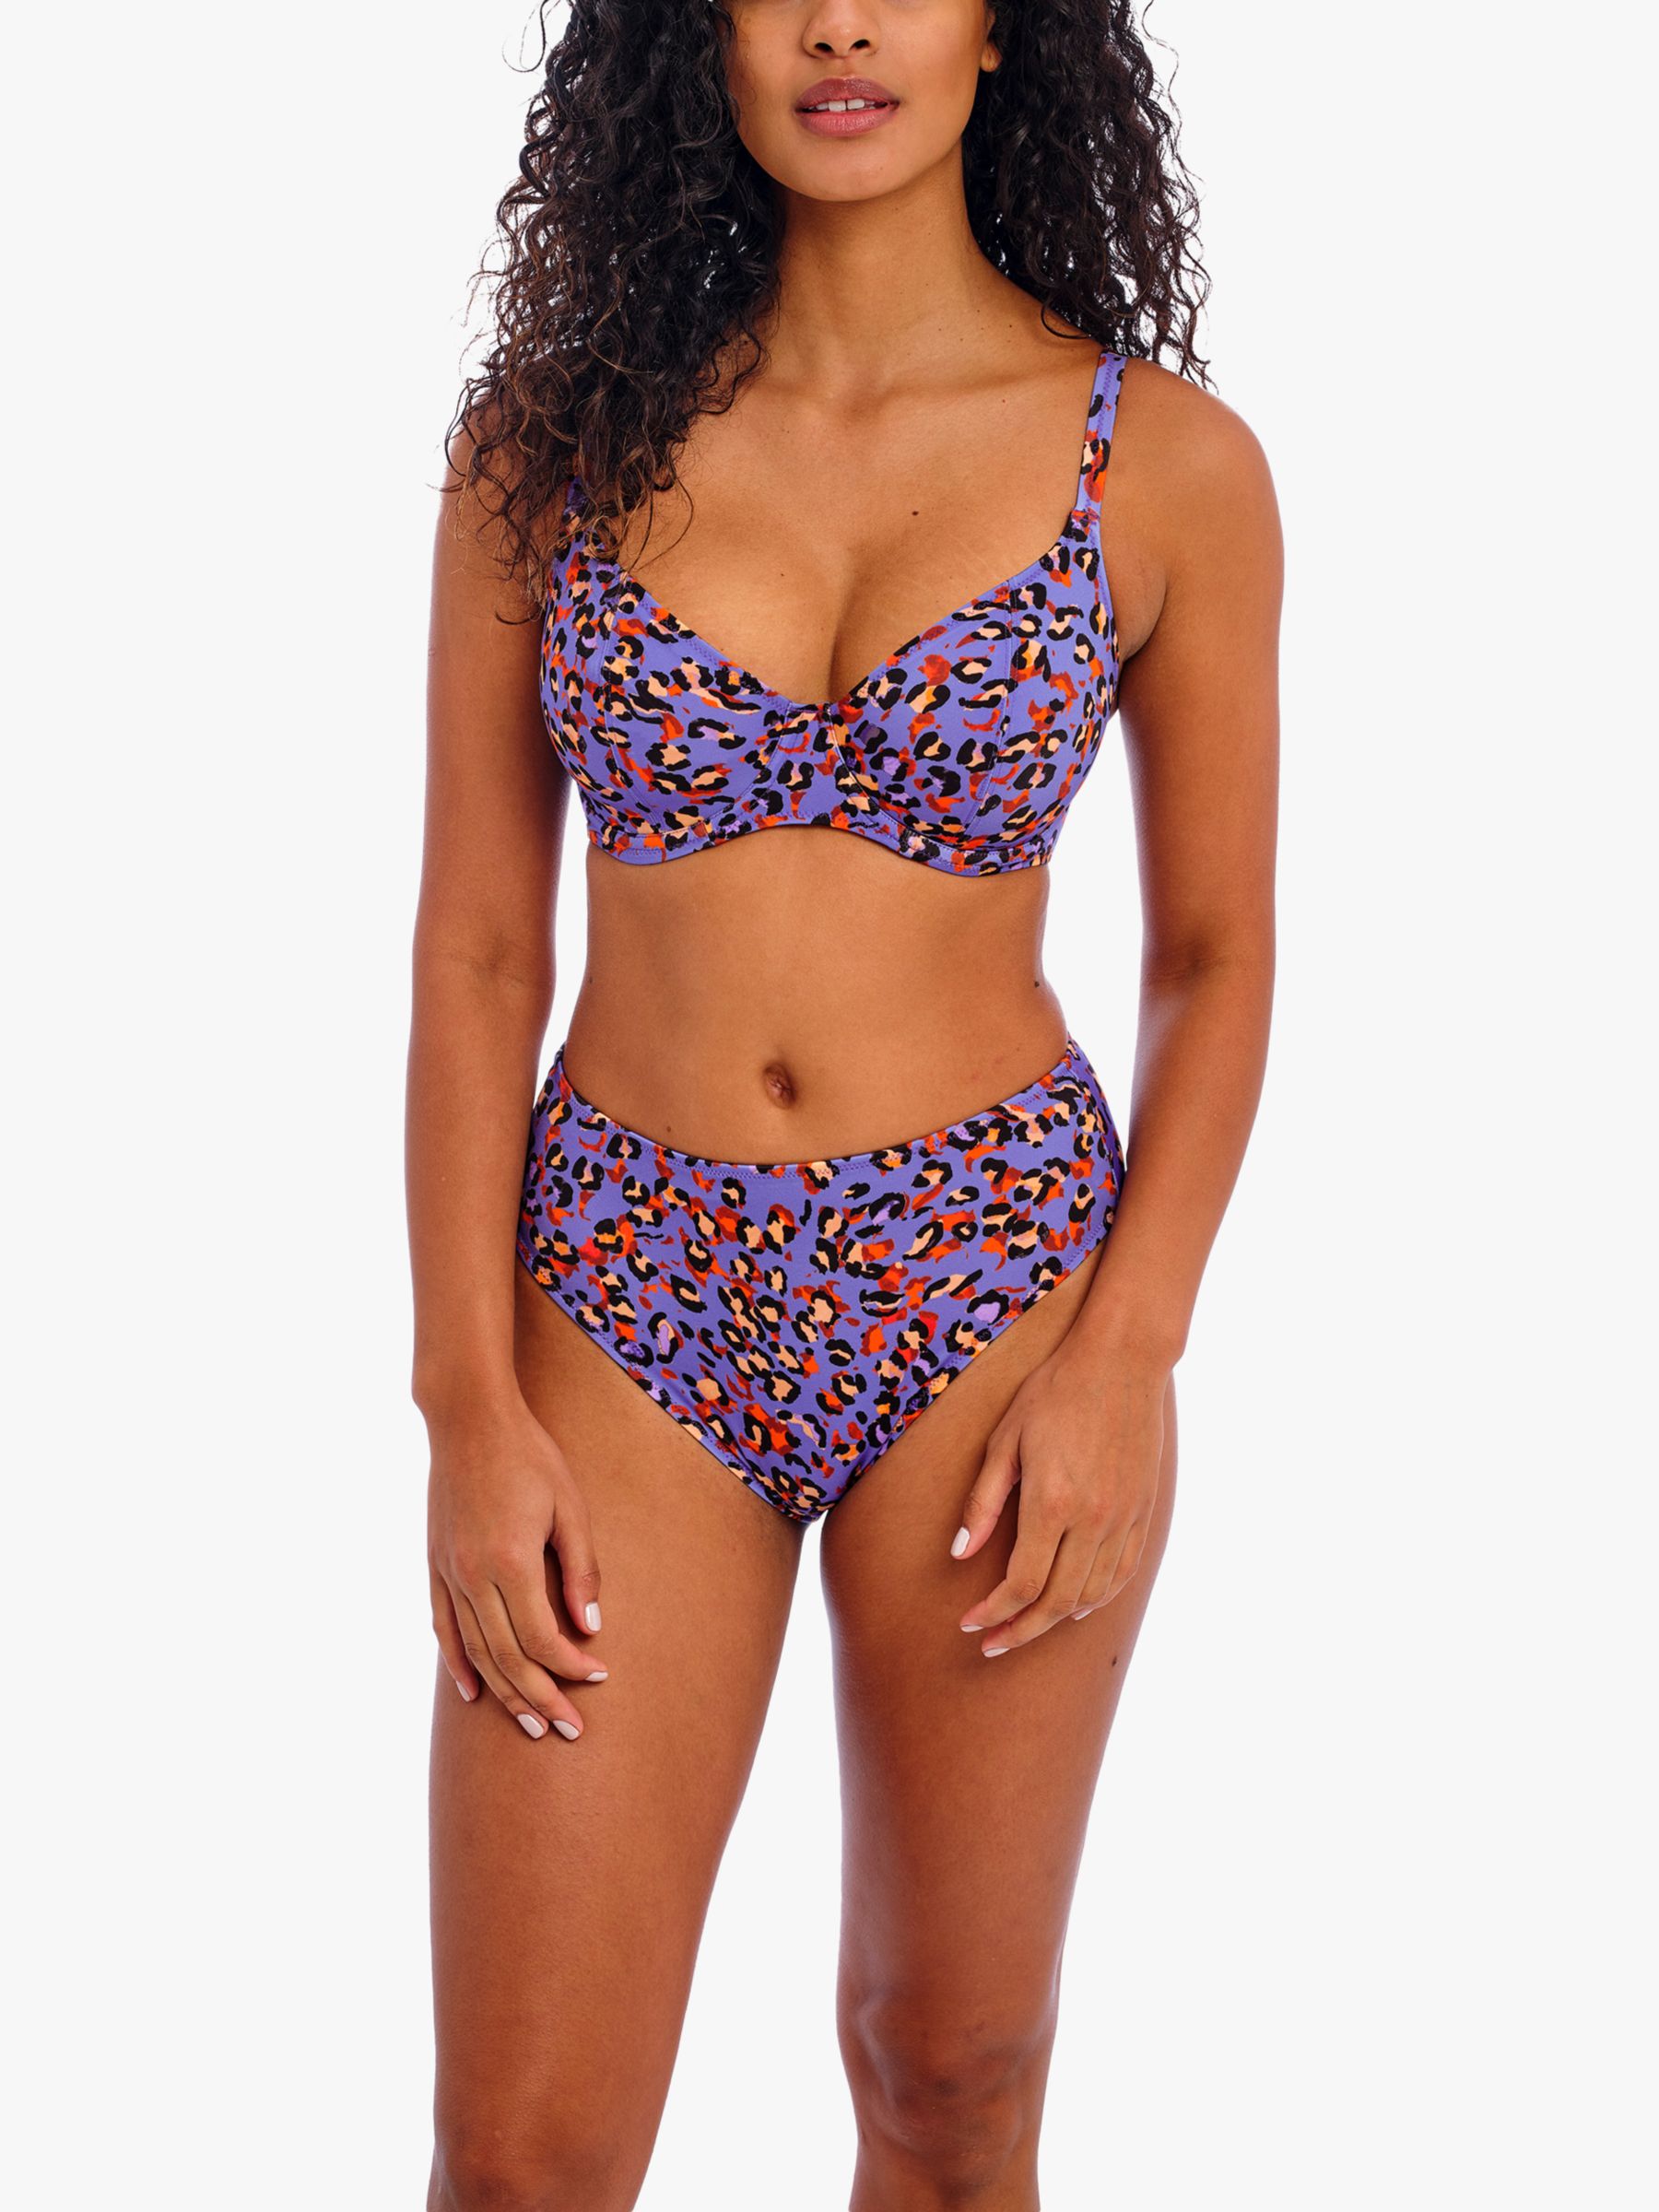 Freya San Tiago Nights Leopard Print Plunge Bikini Top, Blue/Multi, 36G